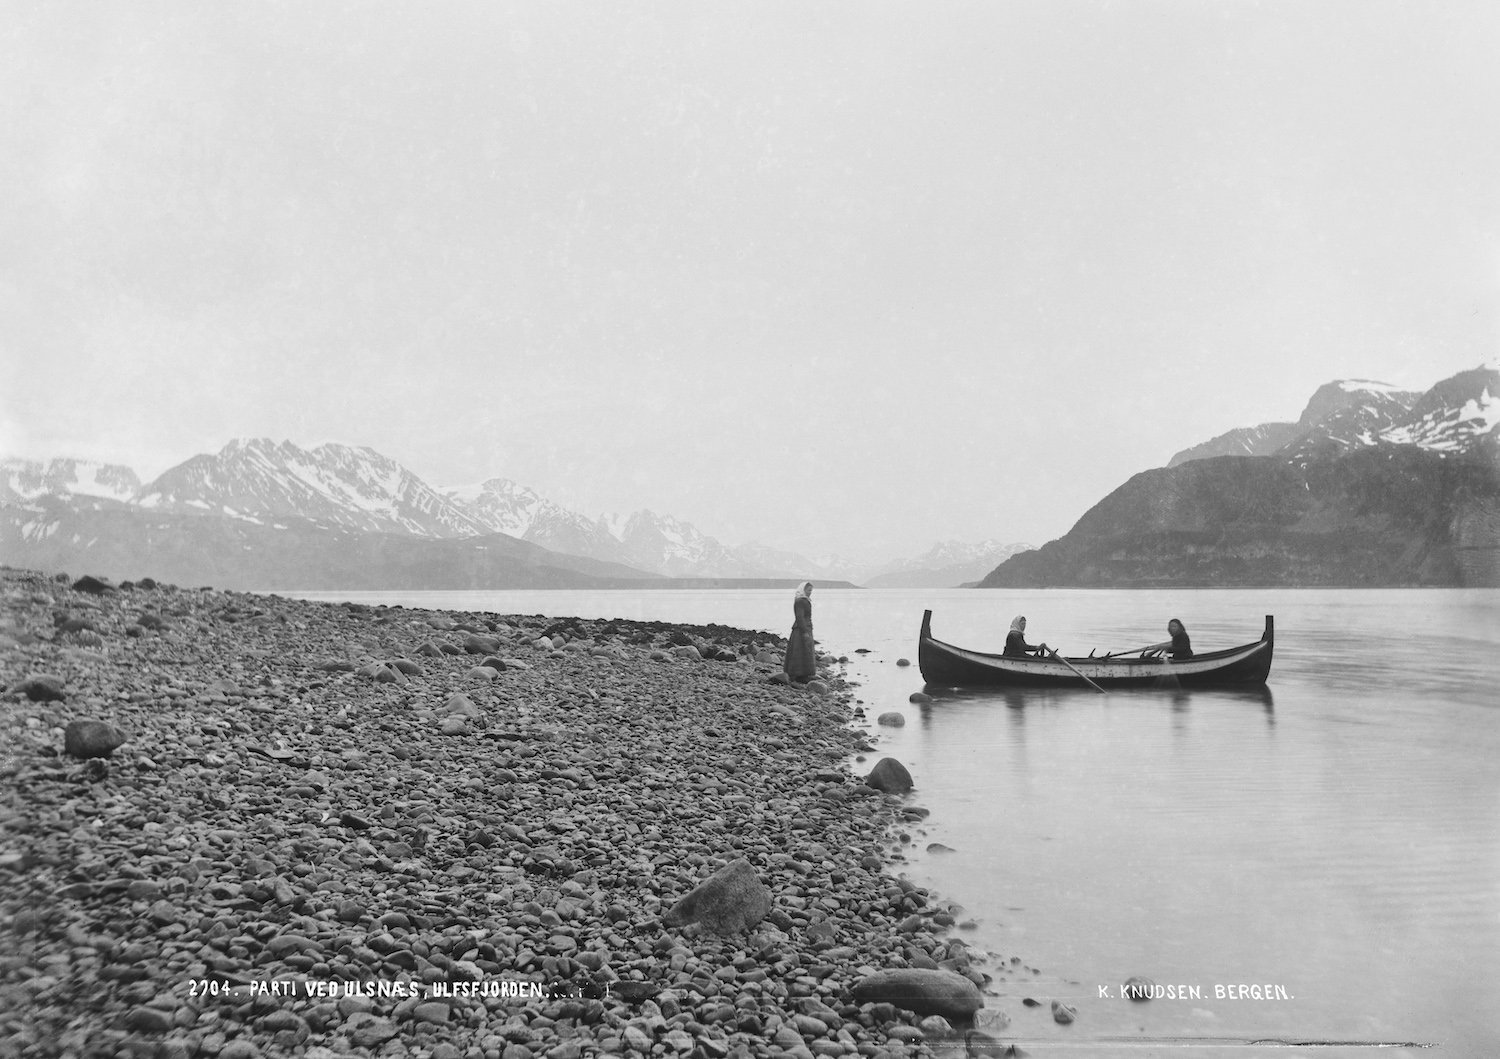 Kvinner i båt Ulsfjorden.